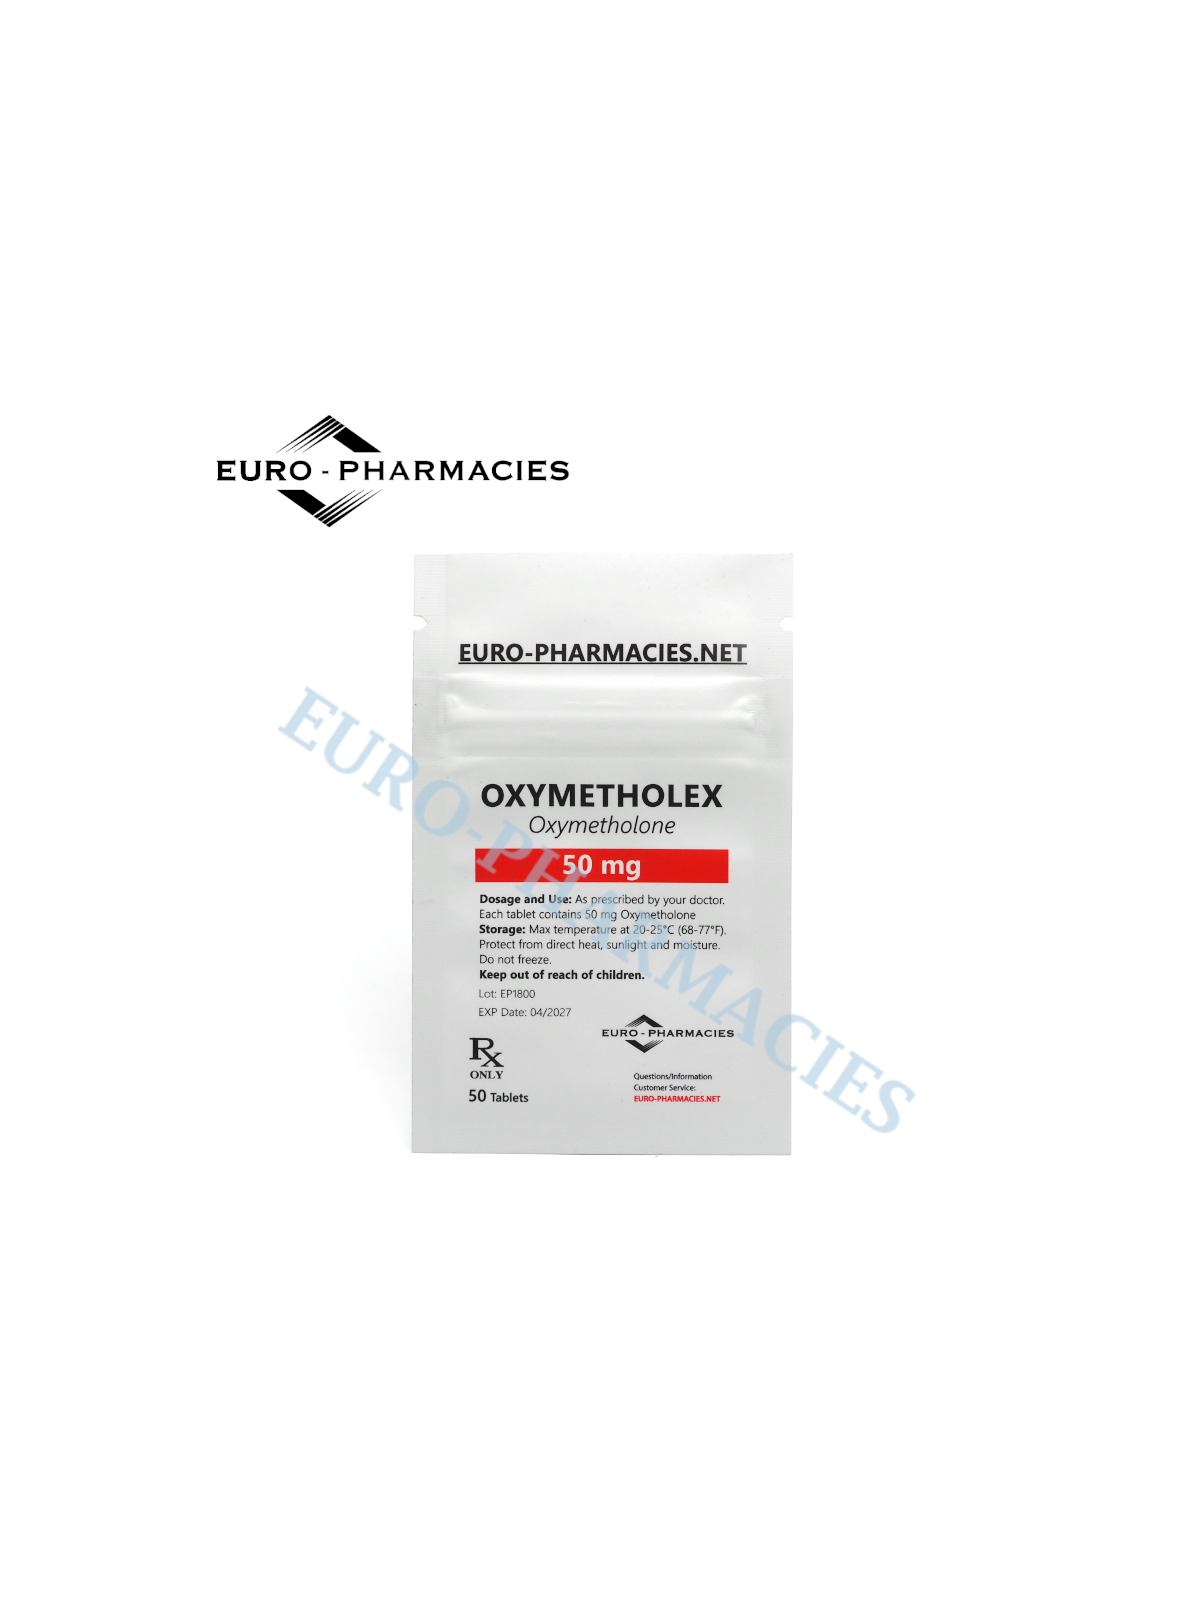 Oxymetholex (Anadrol) - 50mg/tab, 50 pills/bag - Euro-Pharmacies